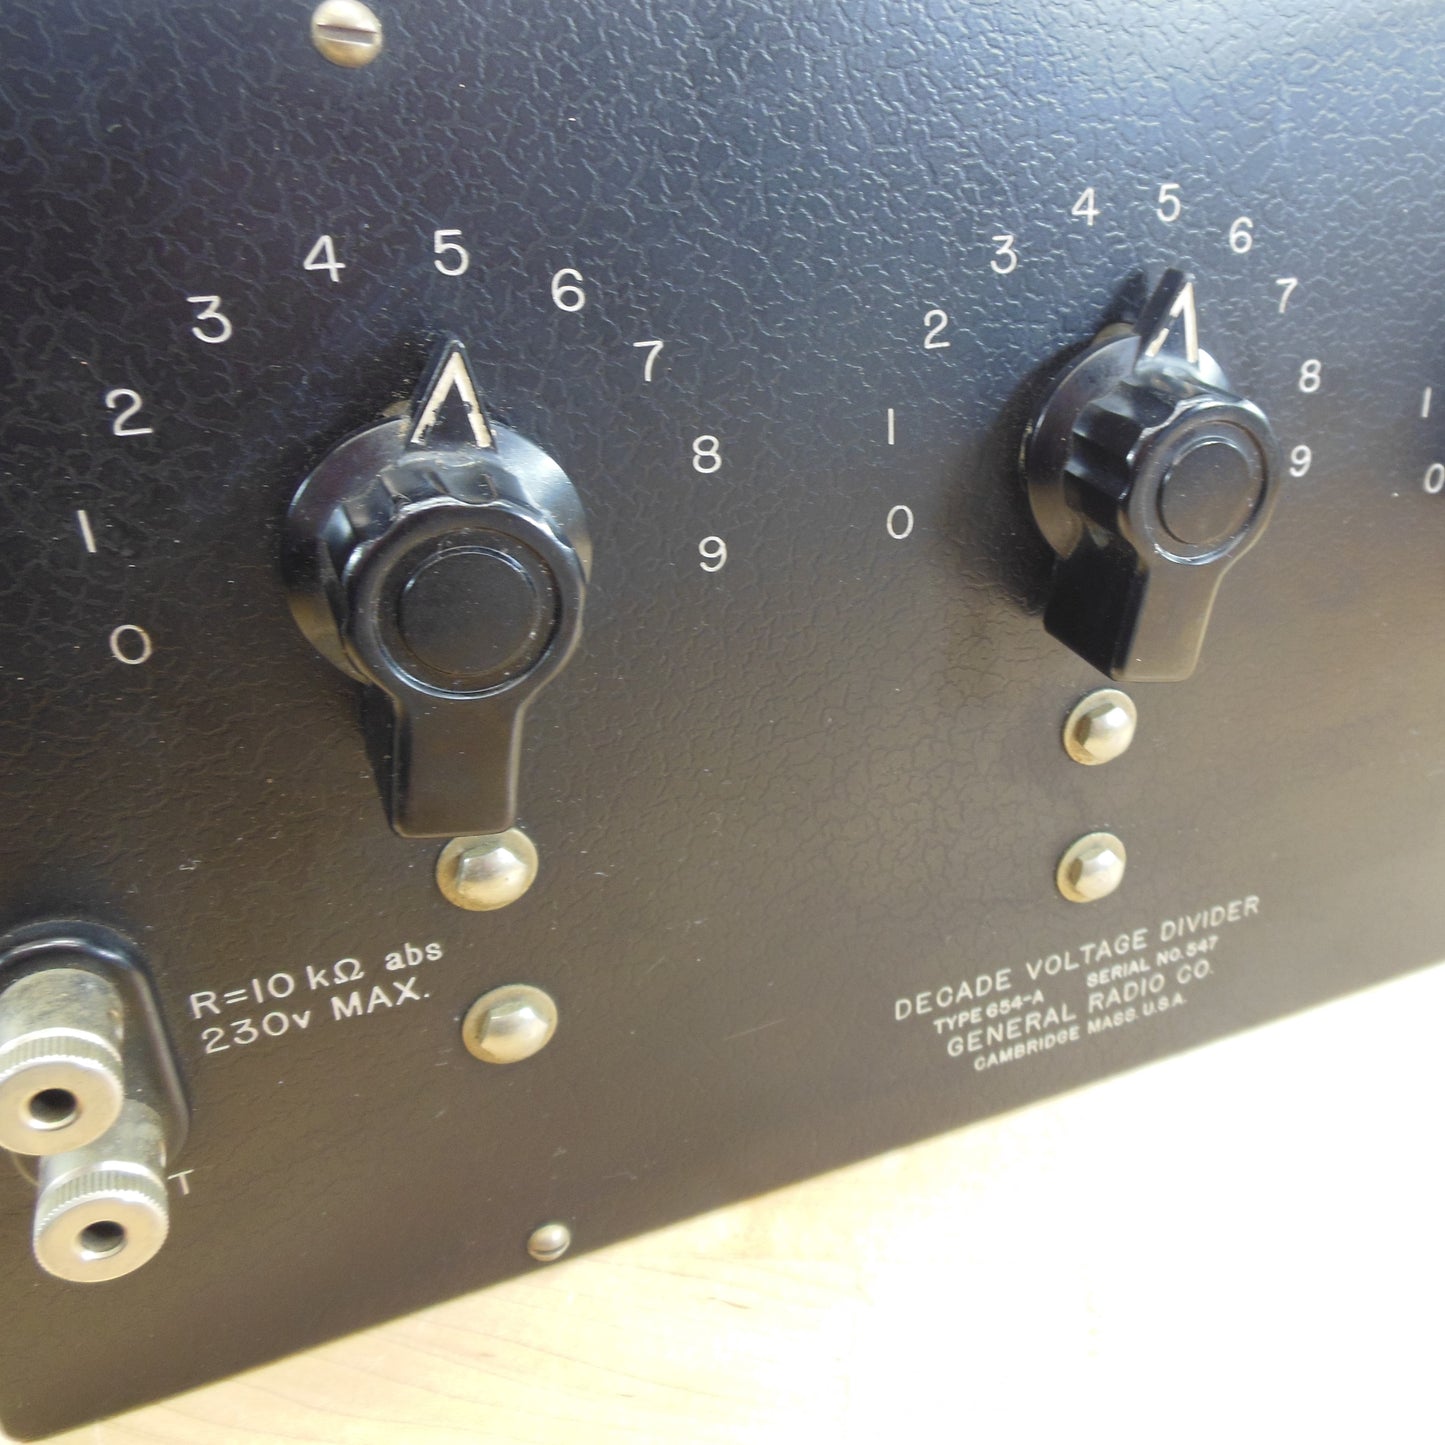 General Radio Co. Decade Voltage Divider 654-A Untested Antique